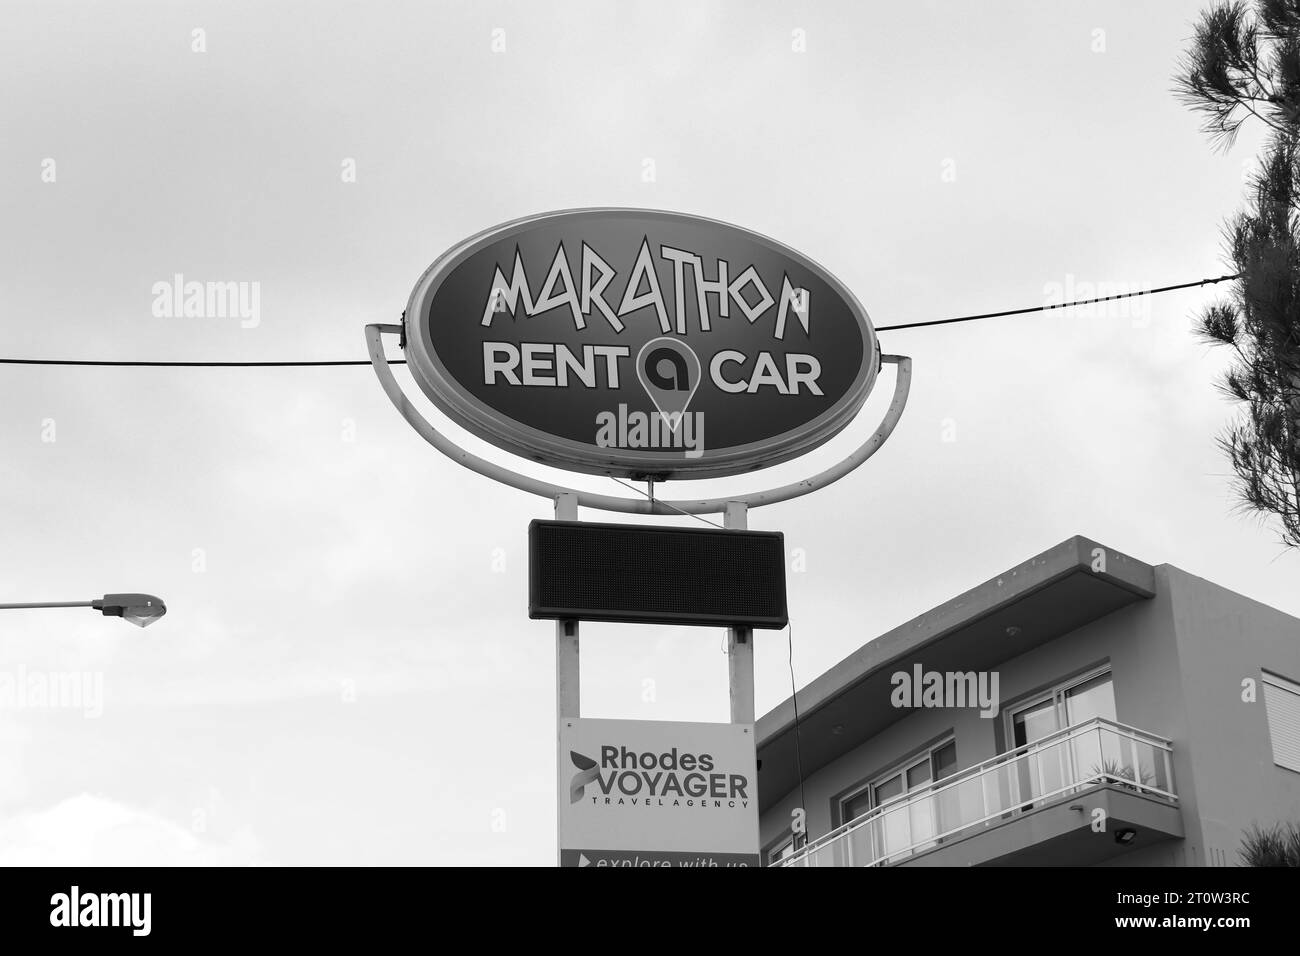 Marathon Rent a Car Business Office Schild, das Touristen über die Lage des Geschäfts in Schwarz-weiß informiert Stockfoto